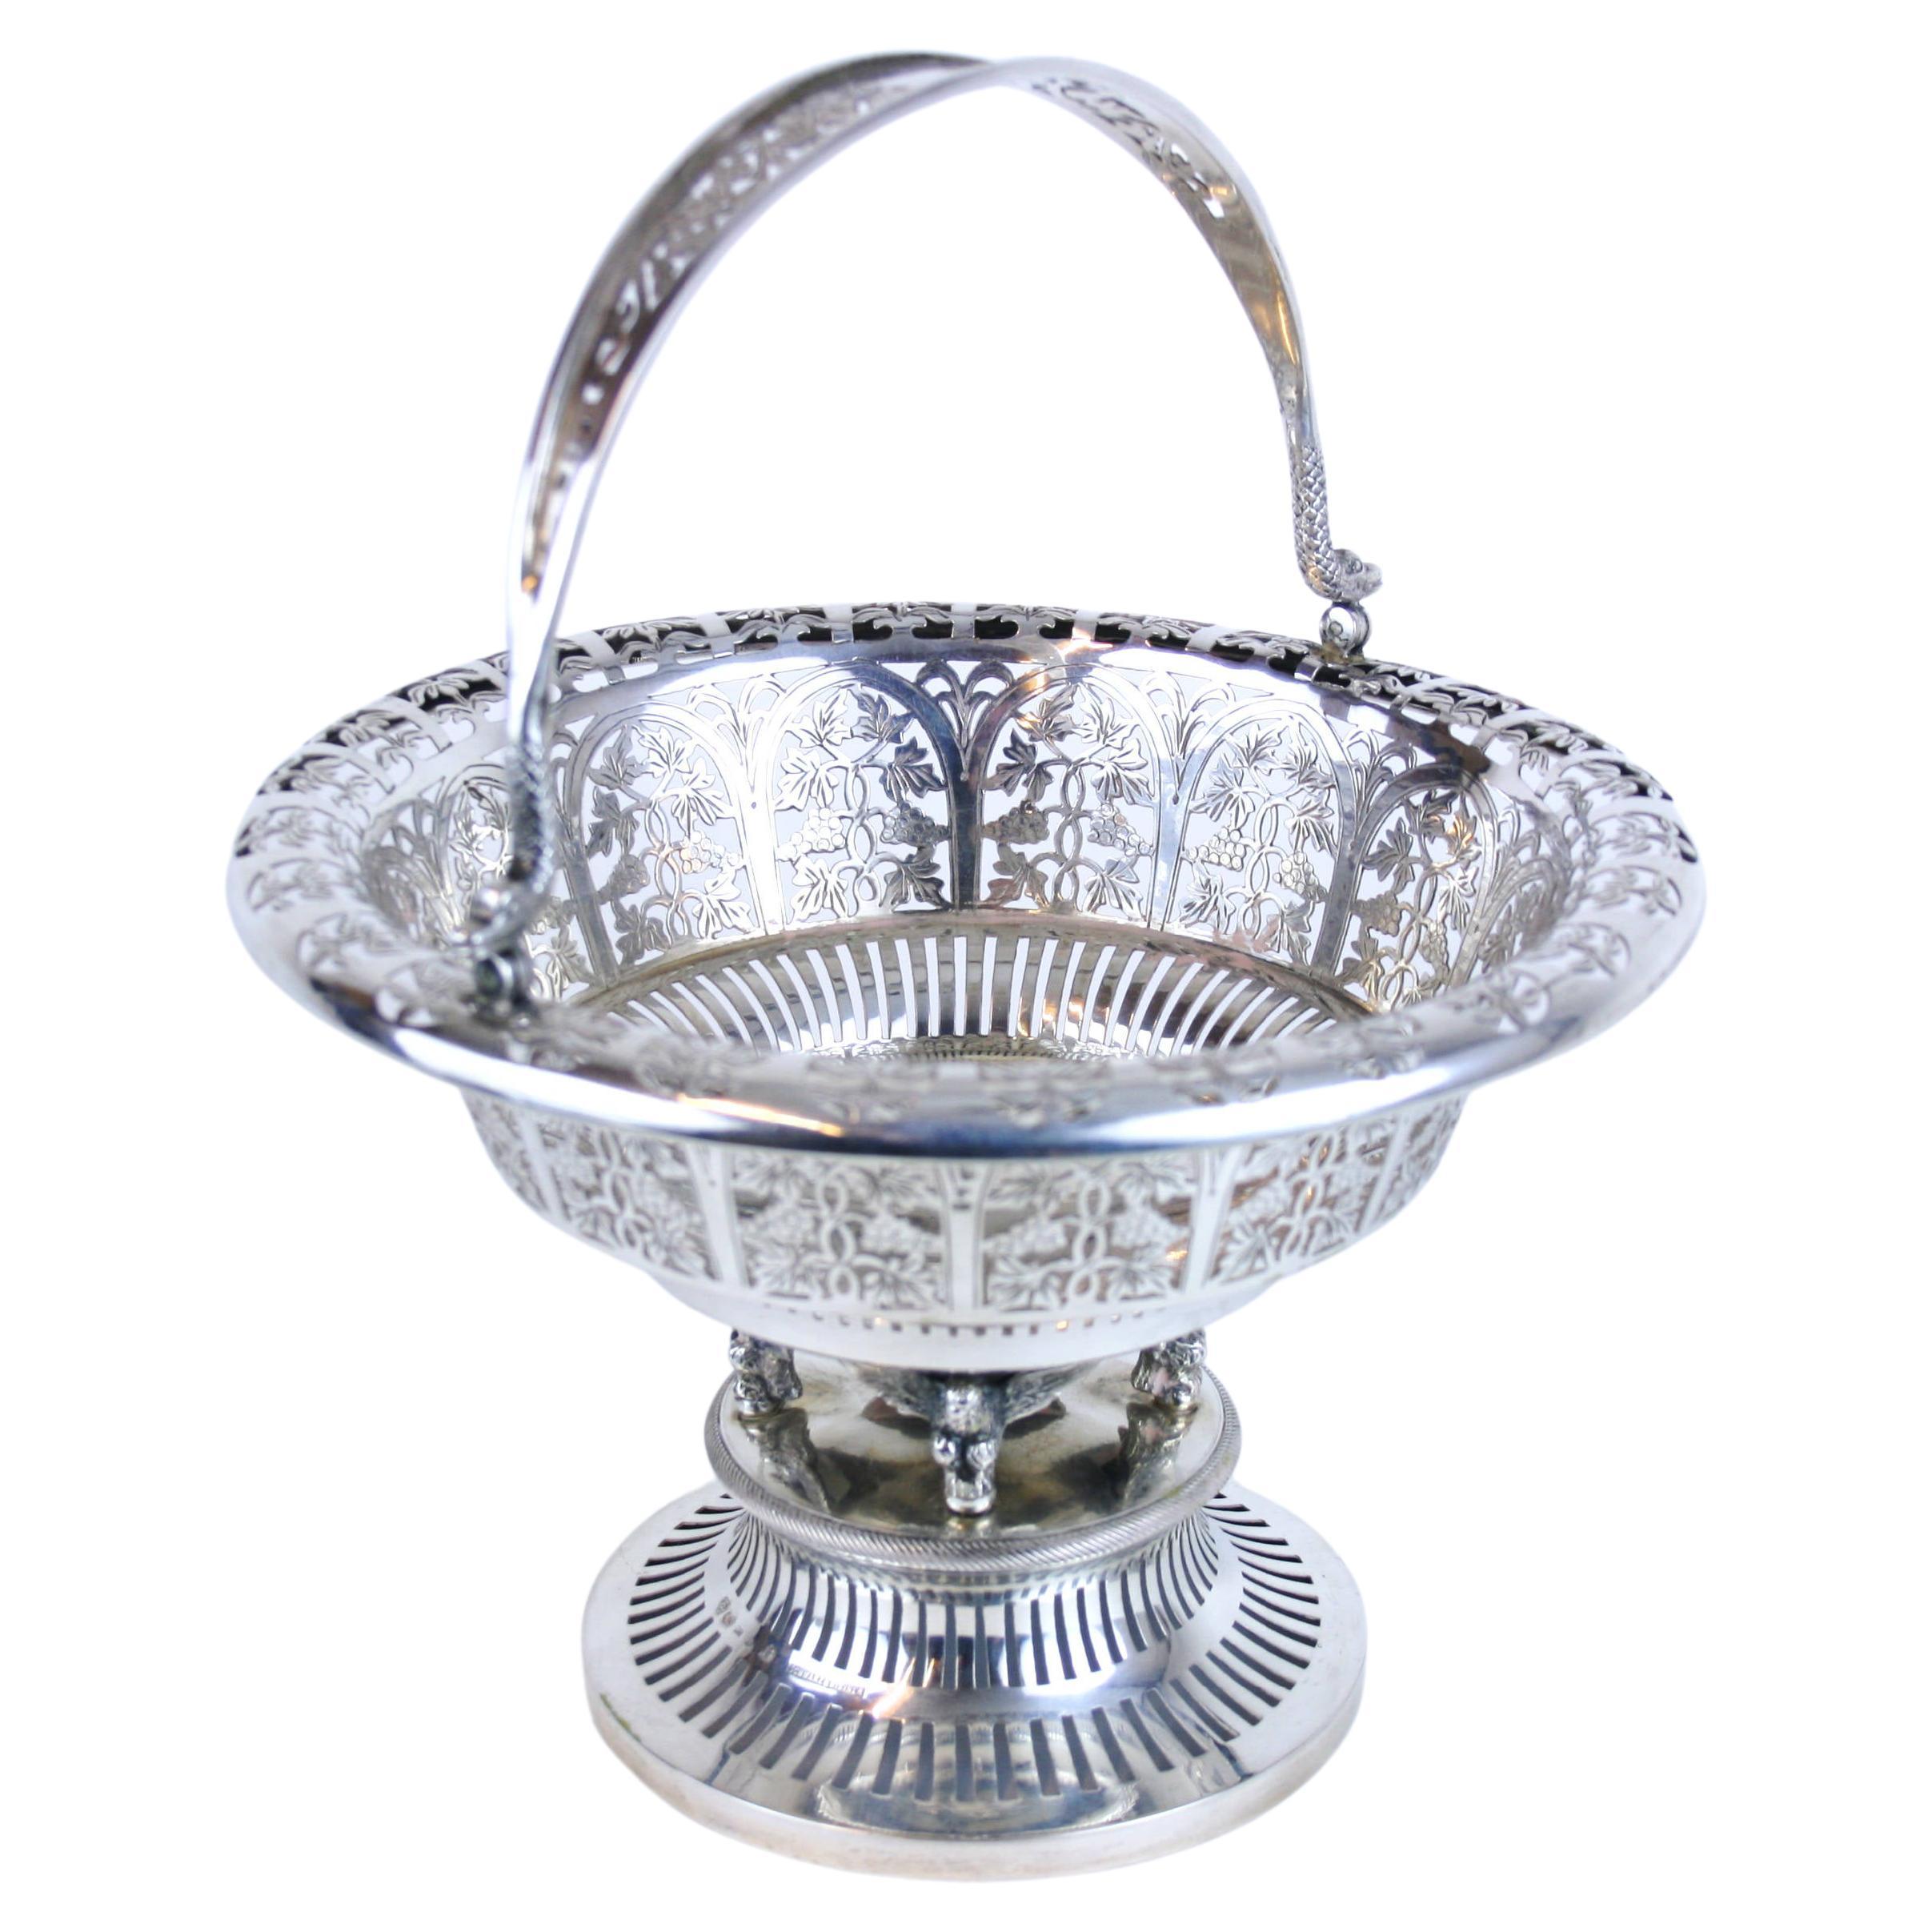 Basket Handle Precious Metal Silver Hallmark Design Schwarz & Steiner Vienna For Sale